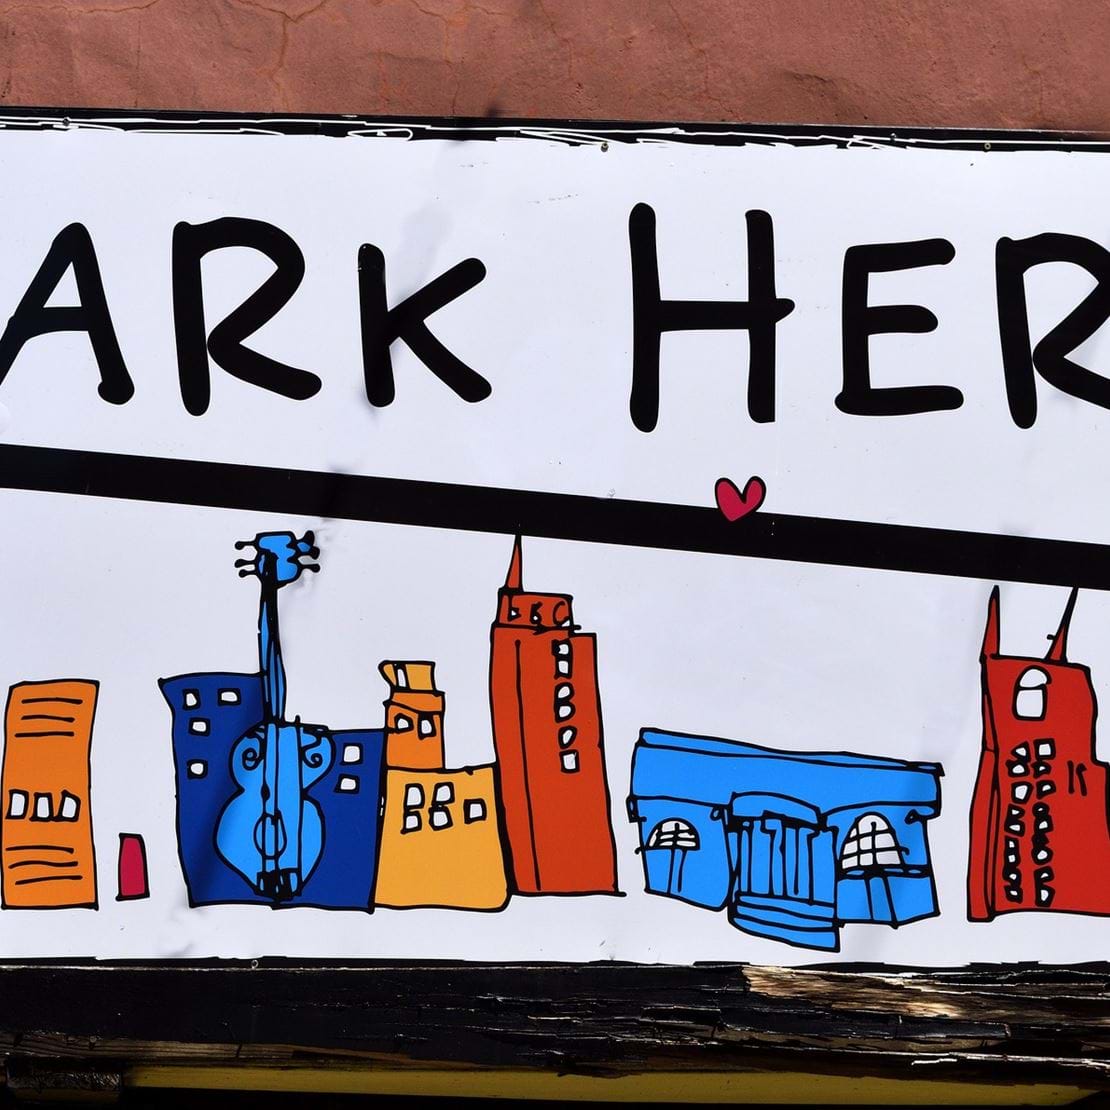 Et skilt med en illustraton af en storby med højhuse og skriften "park here!".